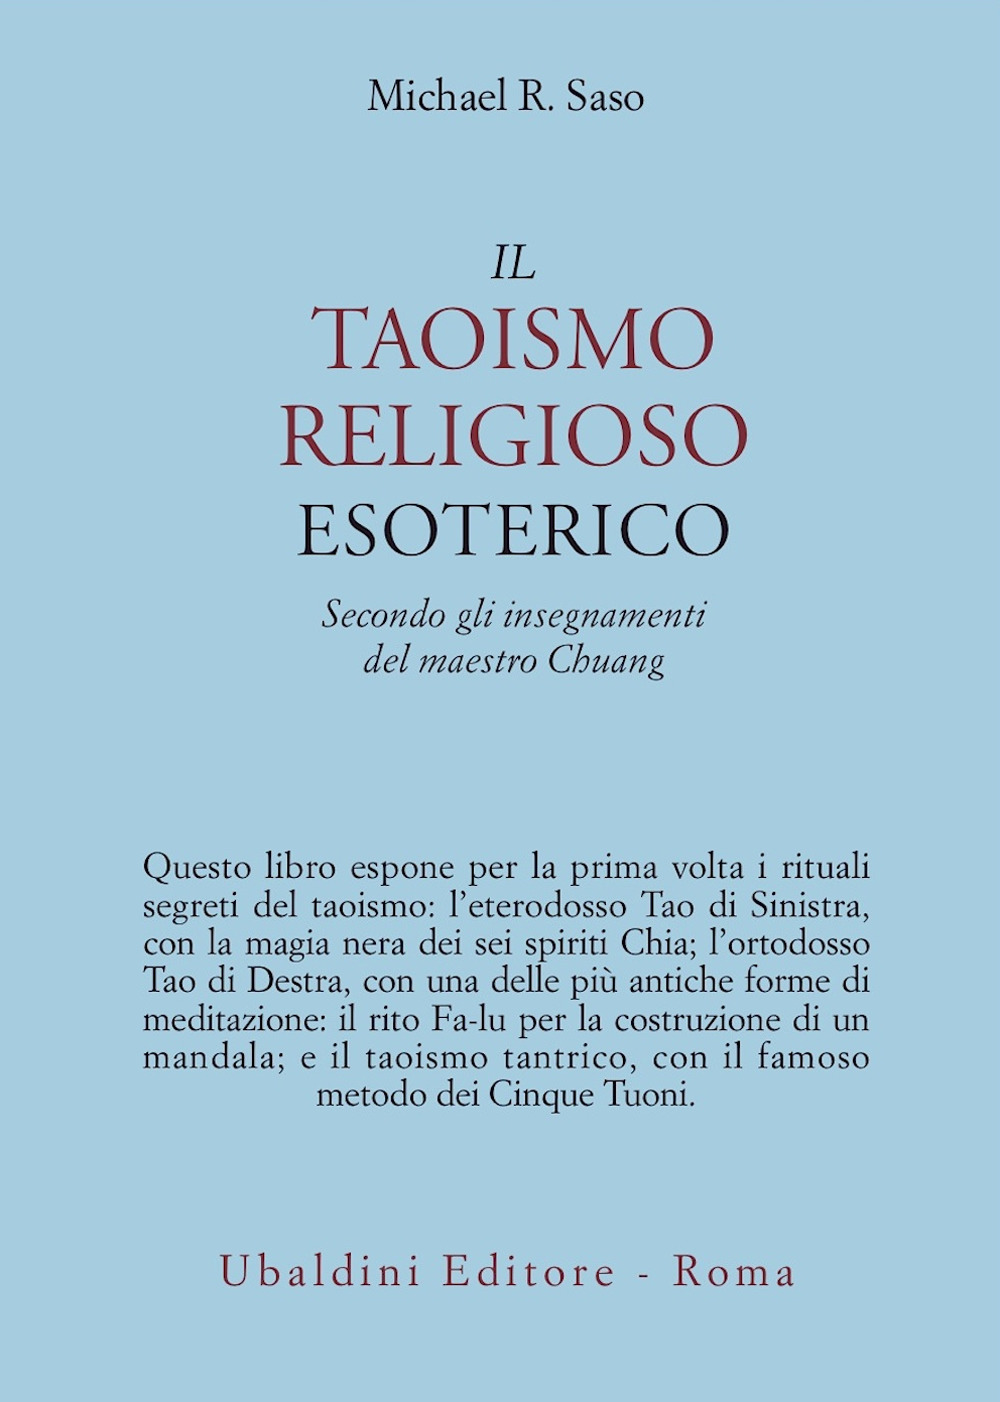 Il taoismo religioso esoterico. Secondo gli insegnamenti del maestro Chuang